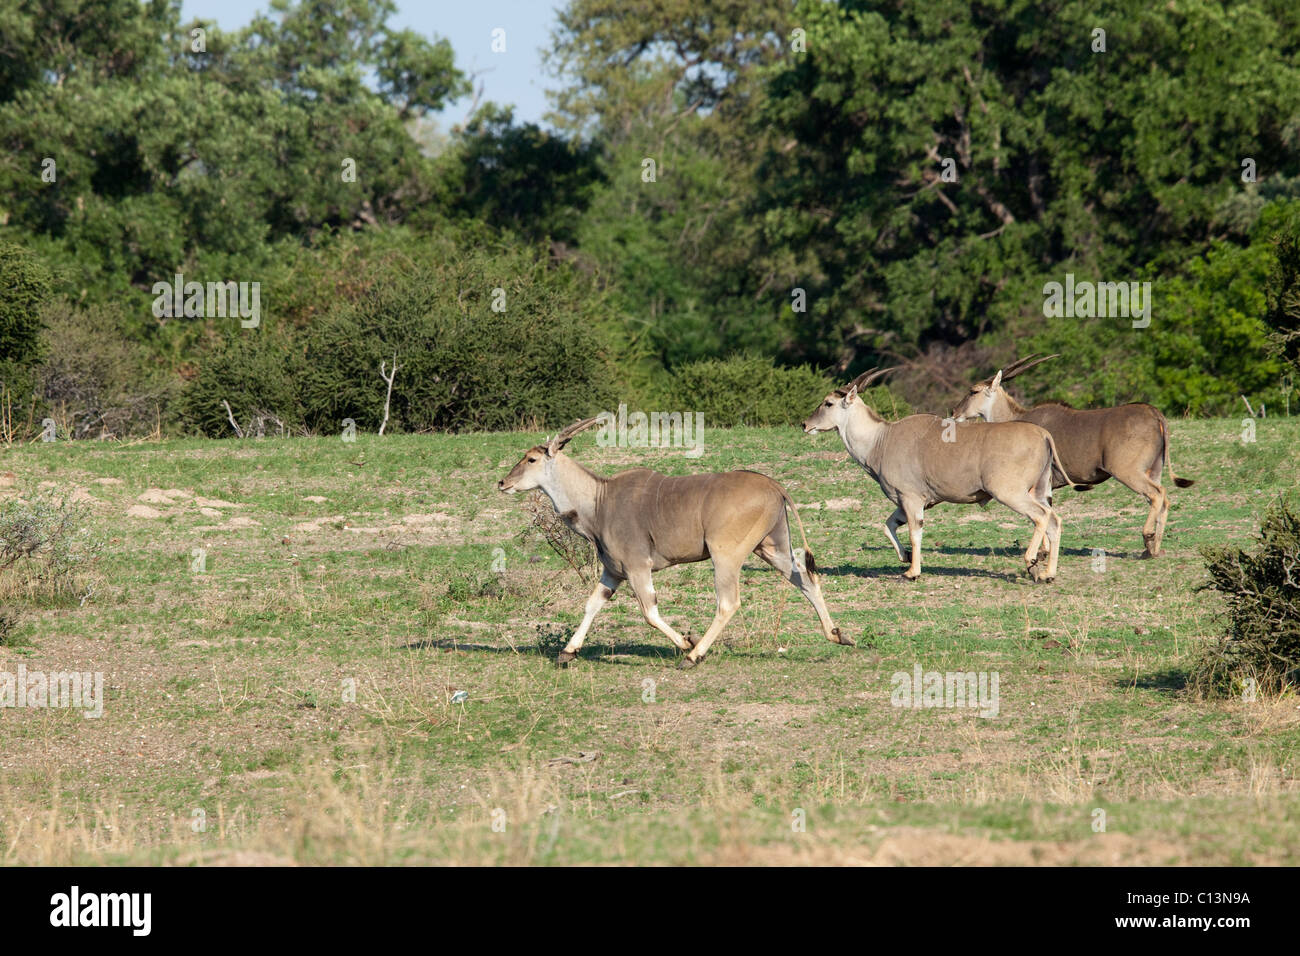 Eland herd (Taurotragus oryx). Running. Stock Photo